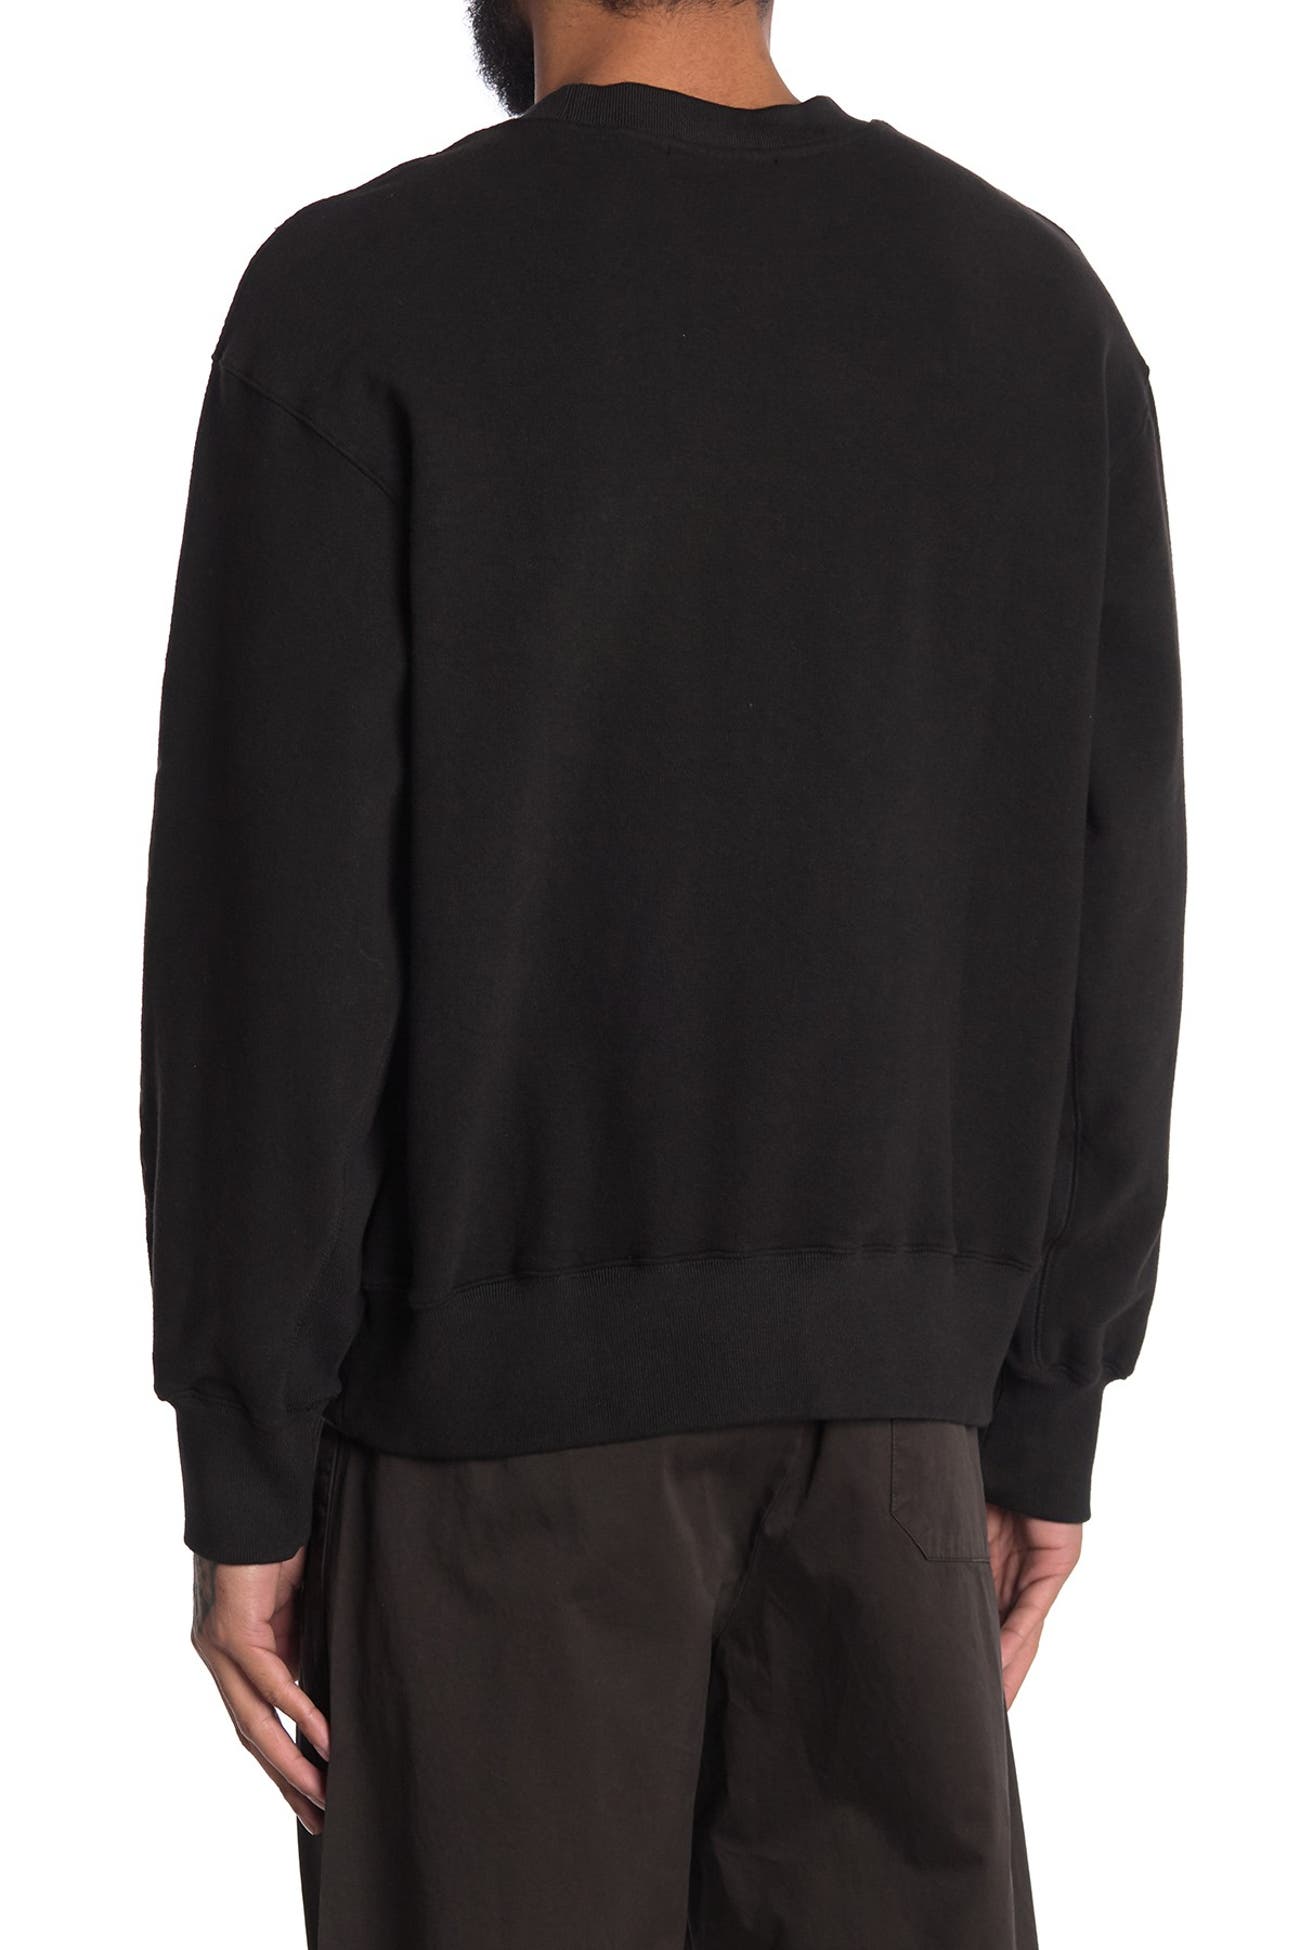 YEEZY | Calabasas Pullover Sweatshirt | Nordstrom Rack